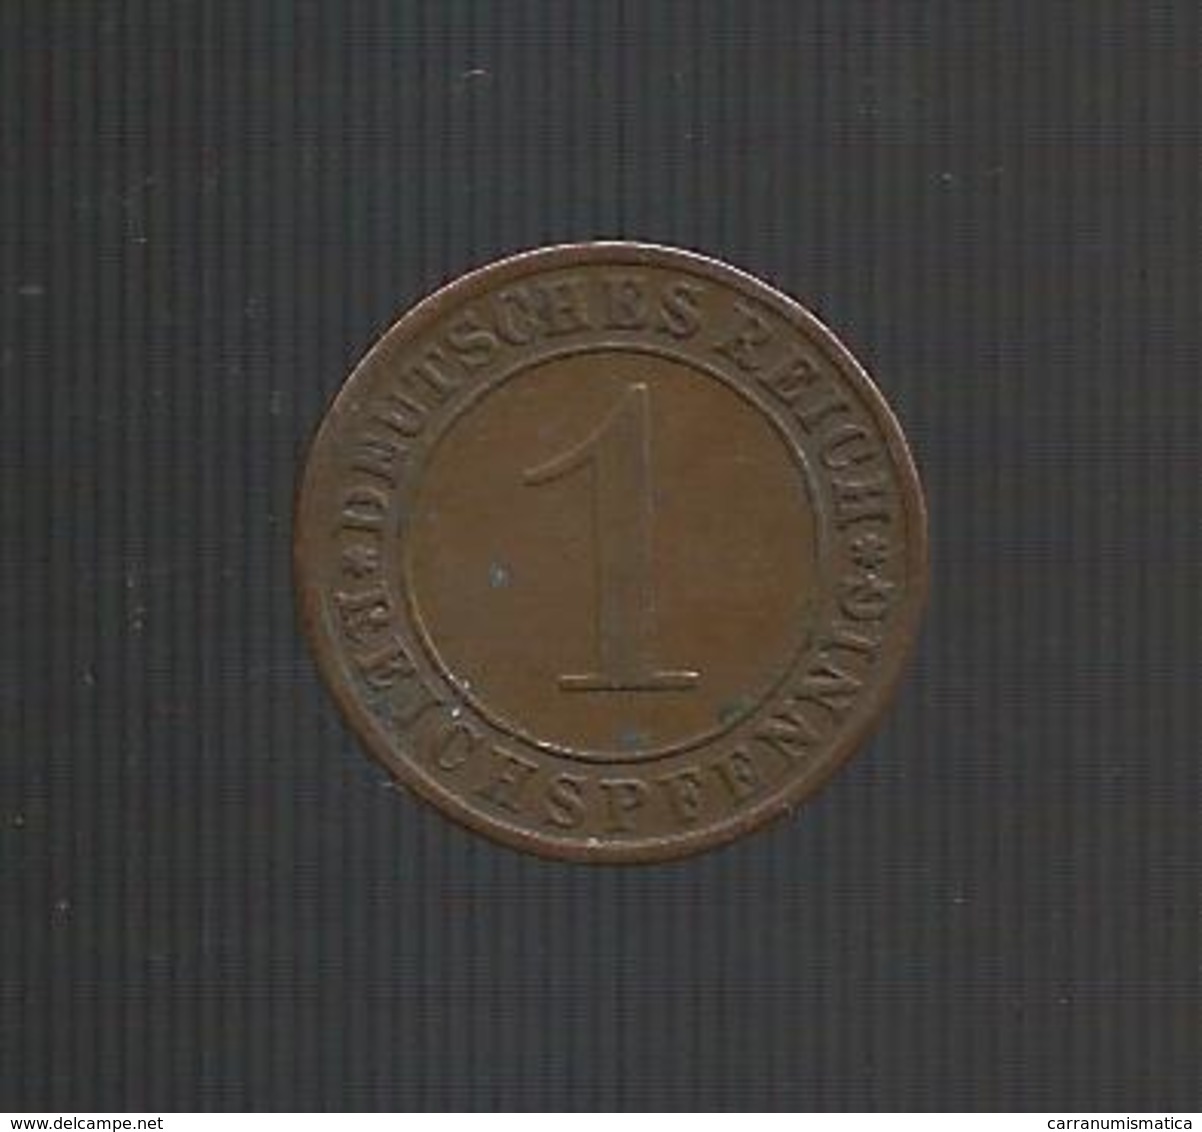 DEUTSCHLAND / GERMANY - Weimarer Republik - 1 REICHSPFENNIG ( 1930 A ) - 1 Rentenpfennig & 1 Reichspfennig